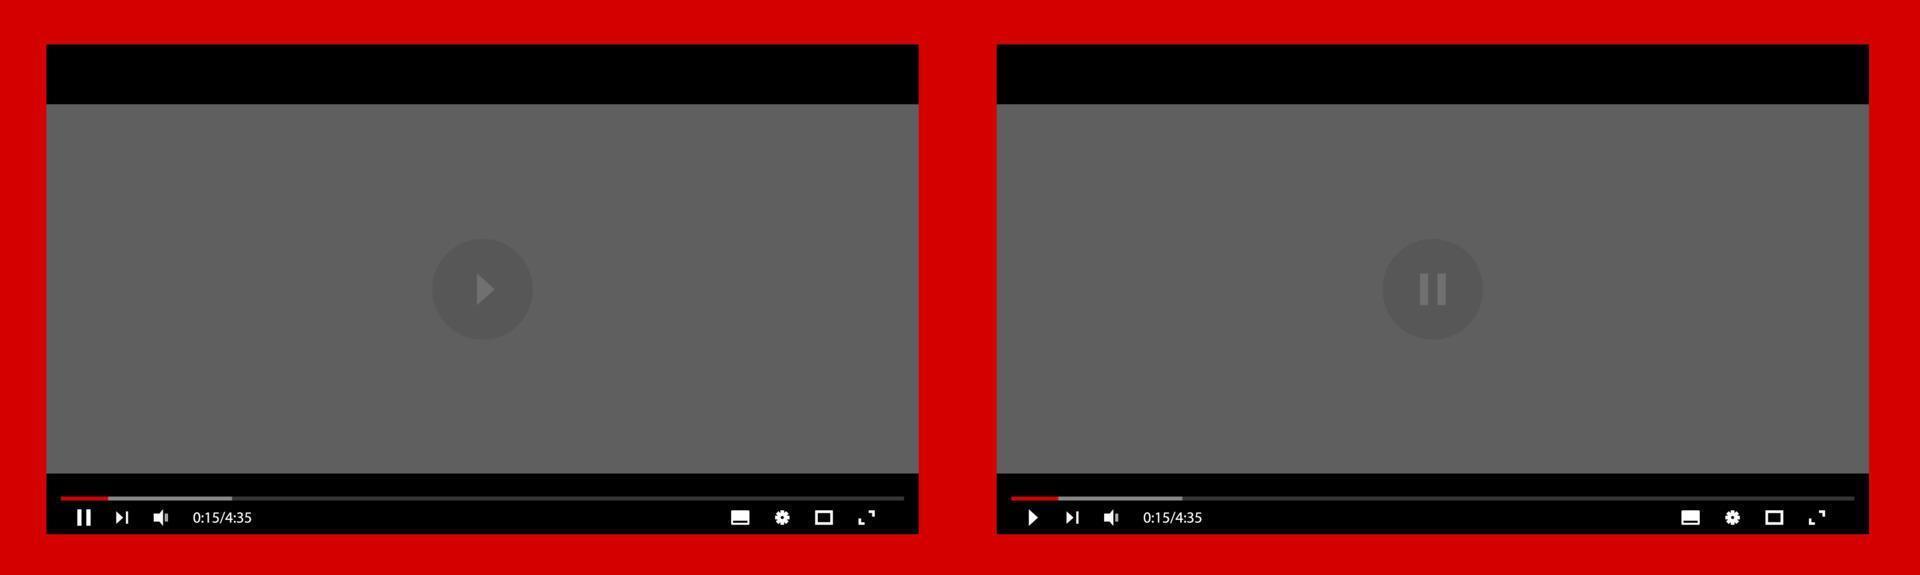 schermsjabloon voor multimediaspelers. lay-out van een live streaming-venster bij pauze en in video-afspeelmodus. sociale media-concept. vector